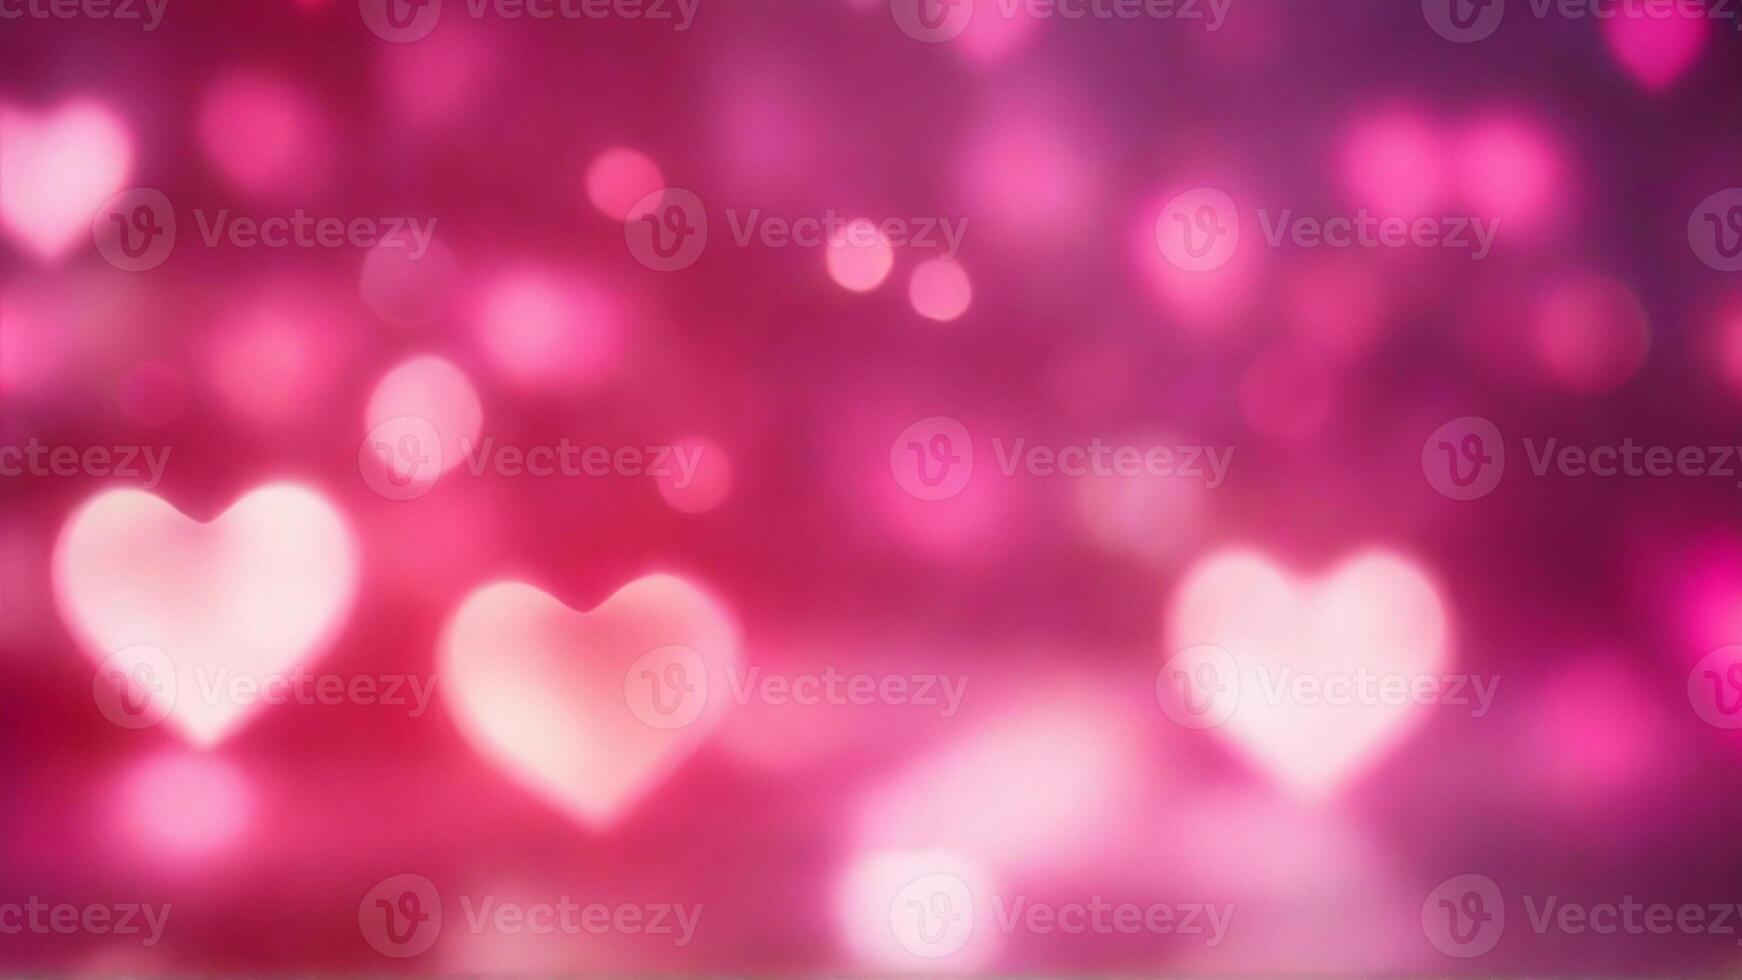 ai gegenereerd hart vormig gloeiend lichten met roze wazig bokeh achtergrond. verjaardag, vakantie groeten kaart, decoratief web banier, Valentijnsdag dag foto